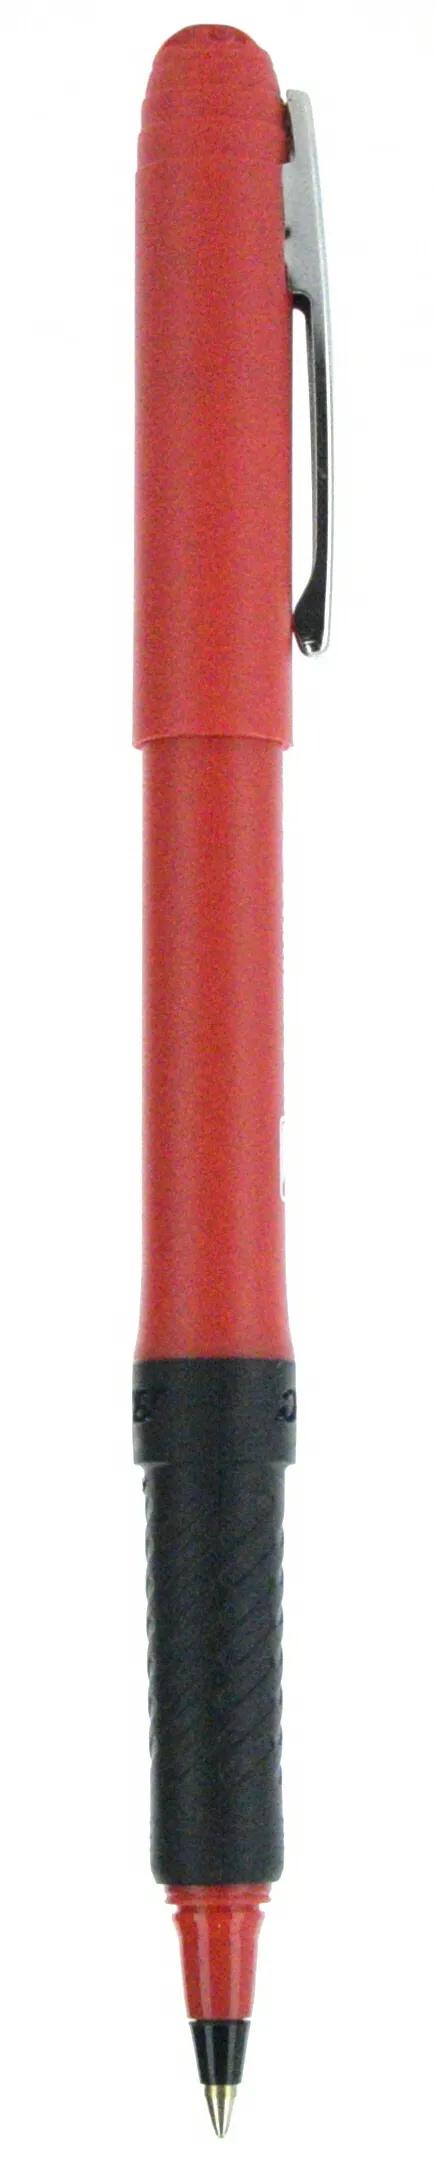 BIC® Grip Roller Pen 138 of 147